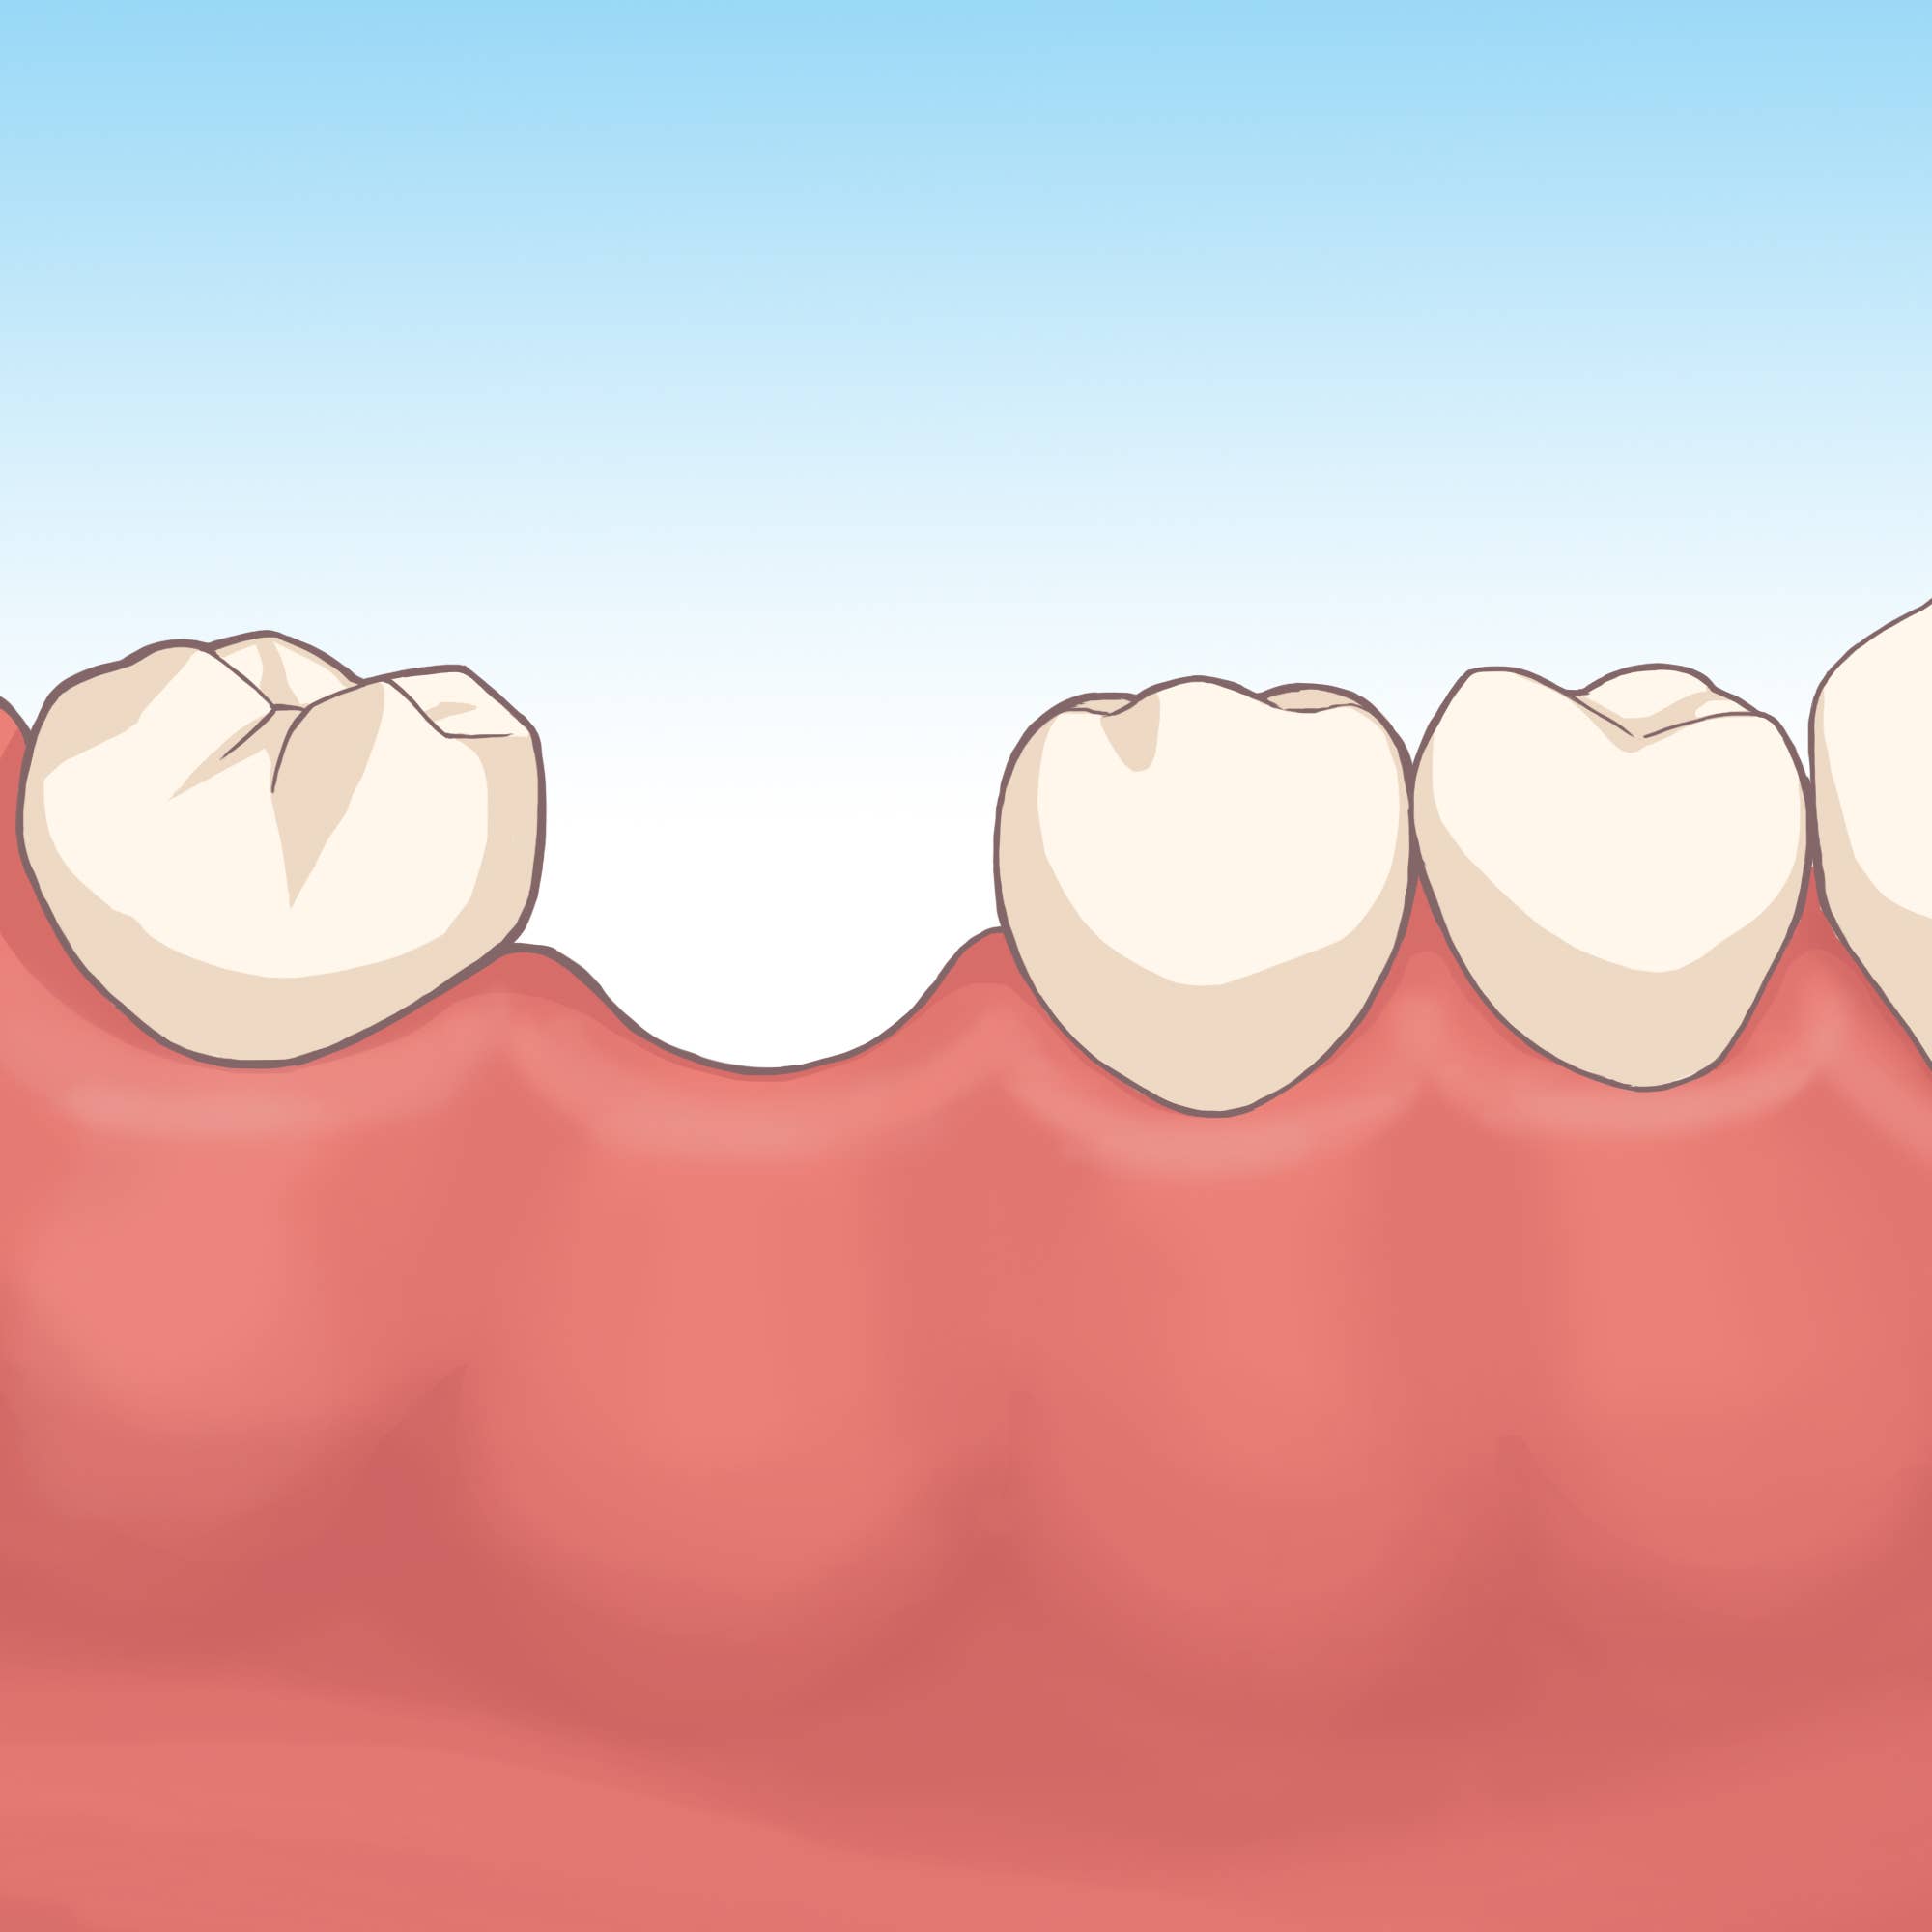 歯を失った際の治療方法について